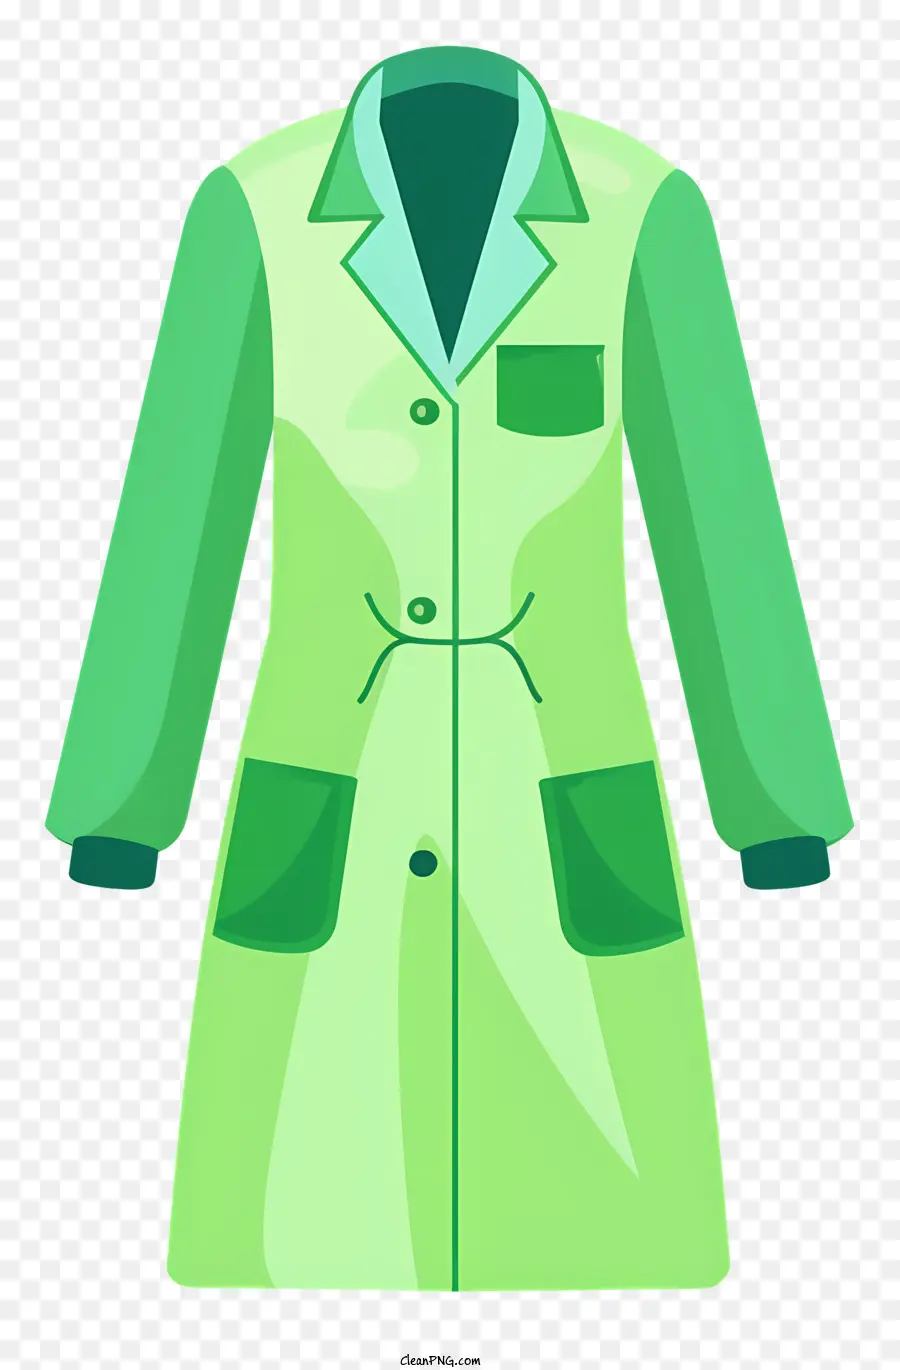 áo khoác màu xanh lá cây phòng thí nghiệm màu xanh lá cây hoaded lab áo khoác lab nhẹ Lab lớp phủ phòng thí nghiệm thực tế - Áo khoác phòng thí nghiệm màu xanh lá cây với túi. 
Thiết kế thực tế